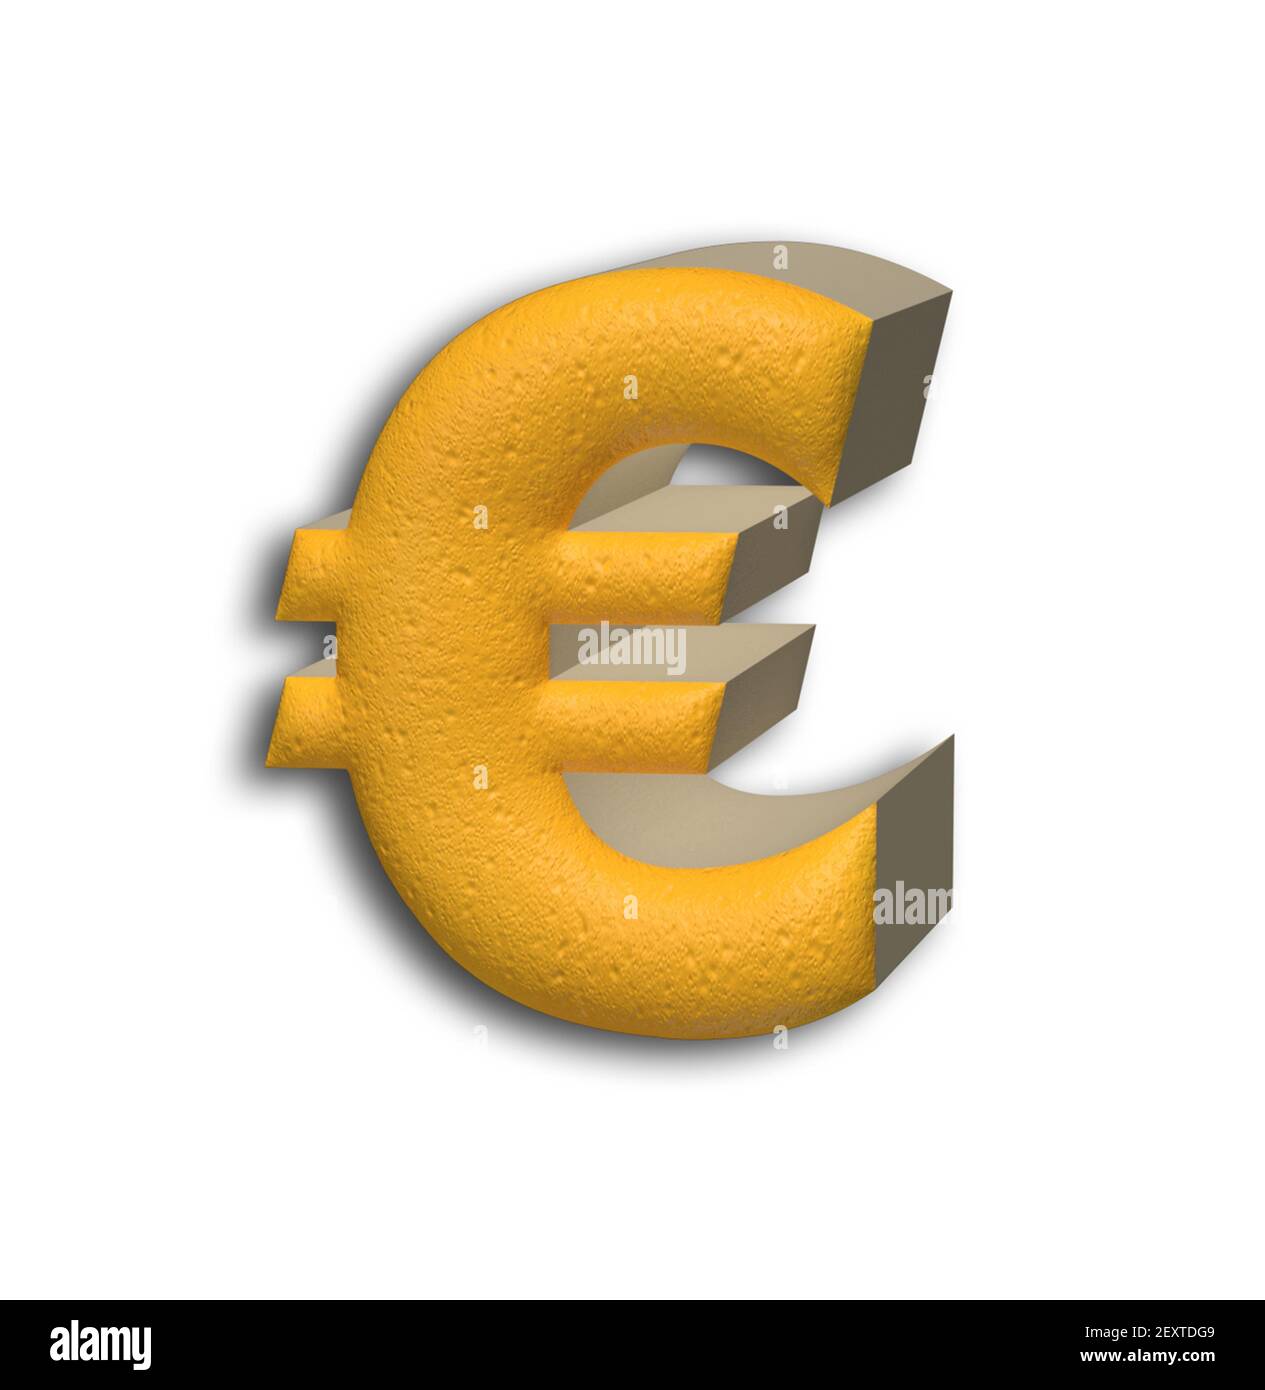 Euro 3D Stock Photo